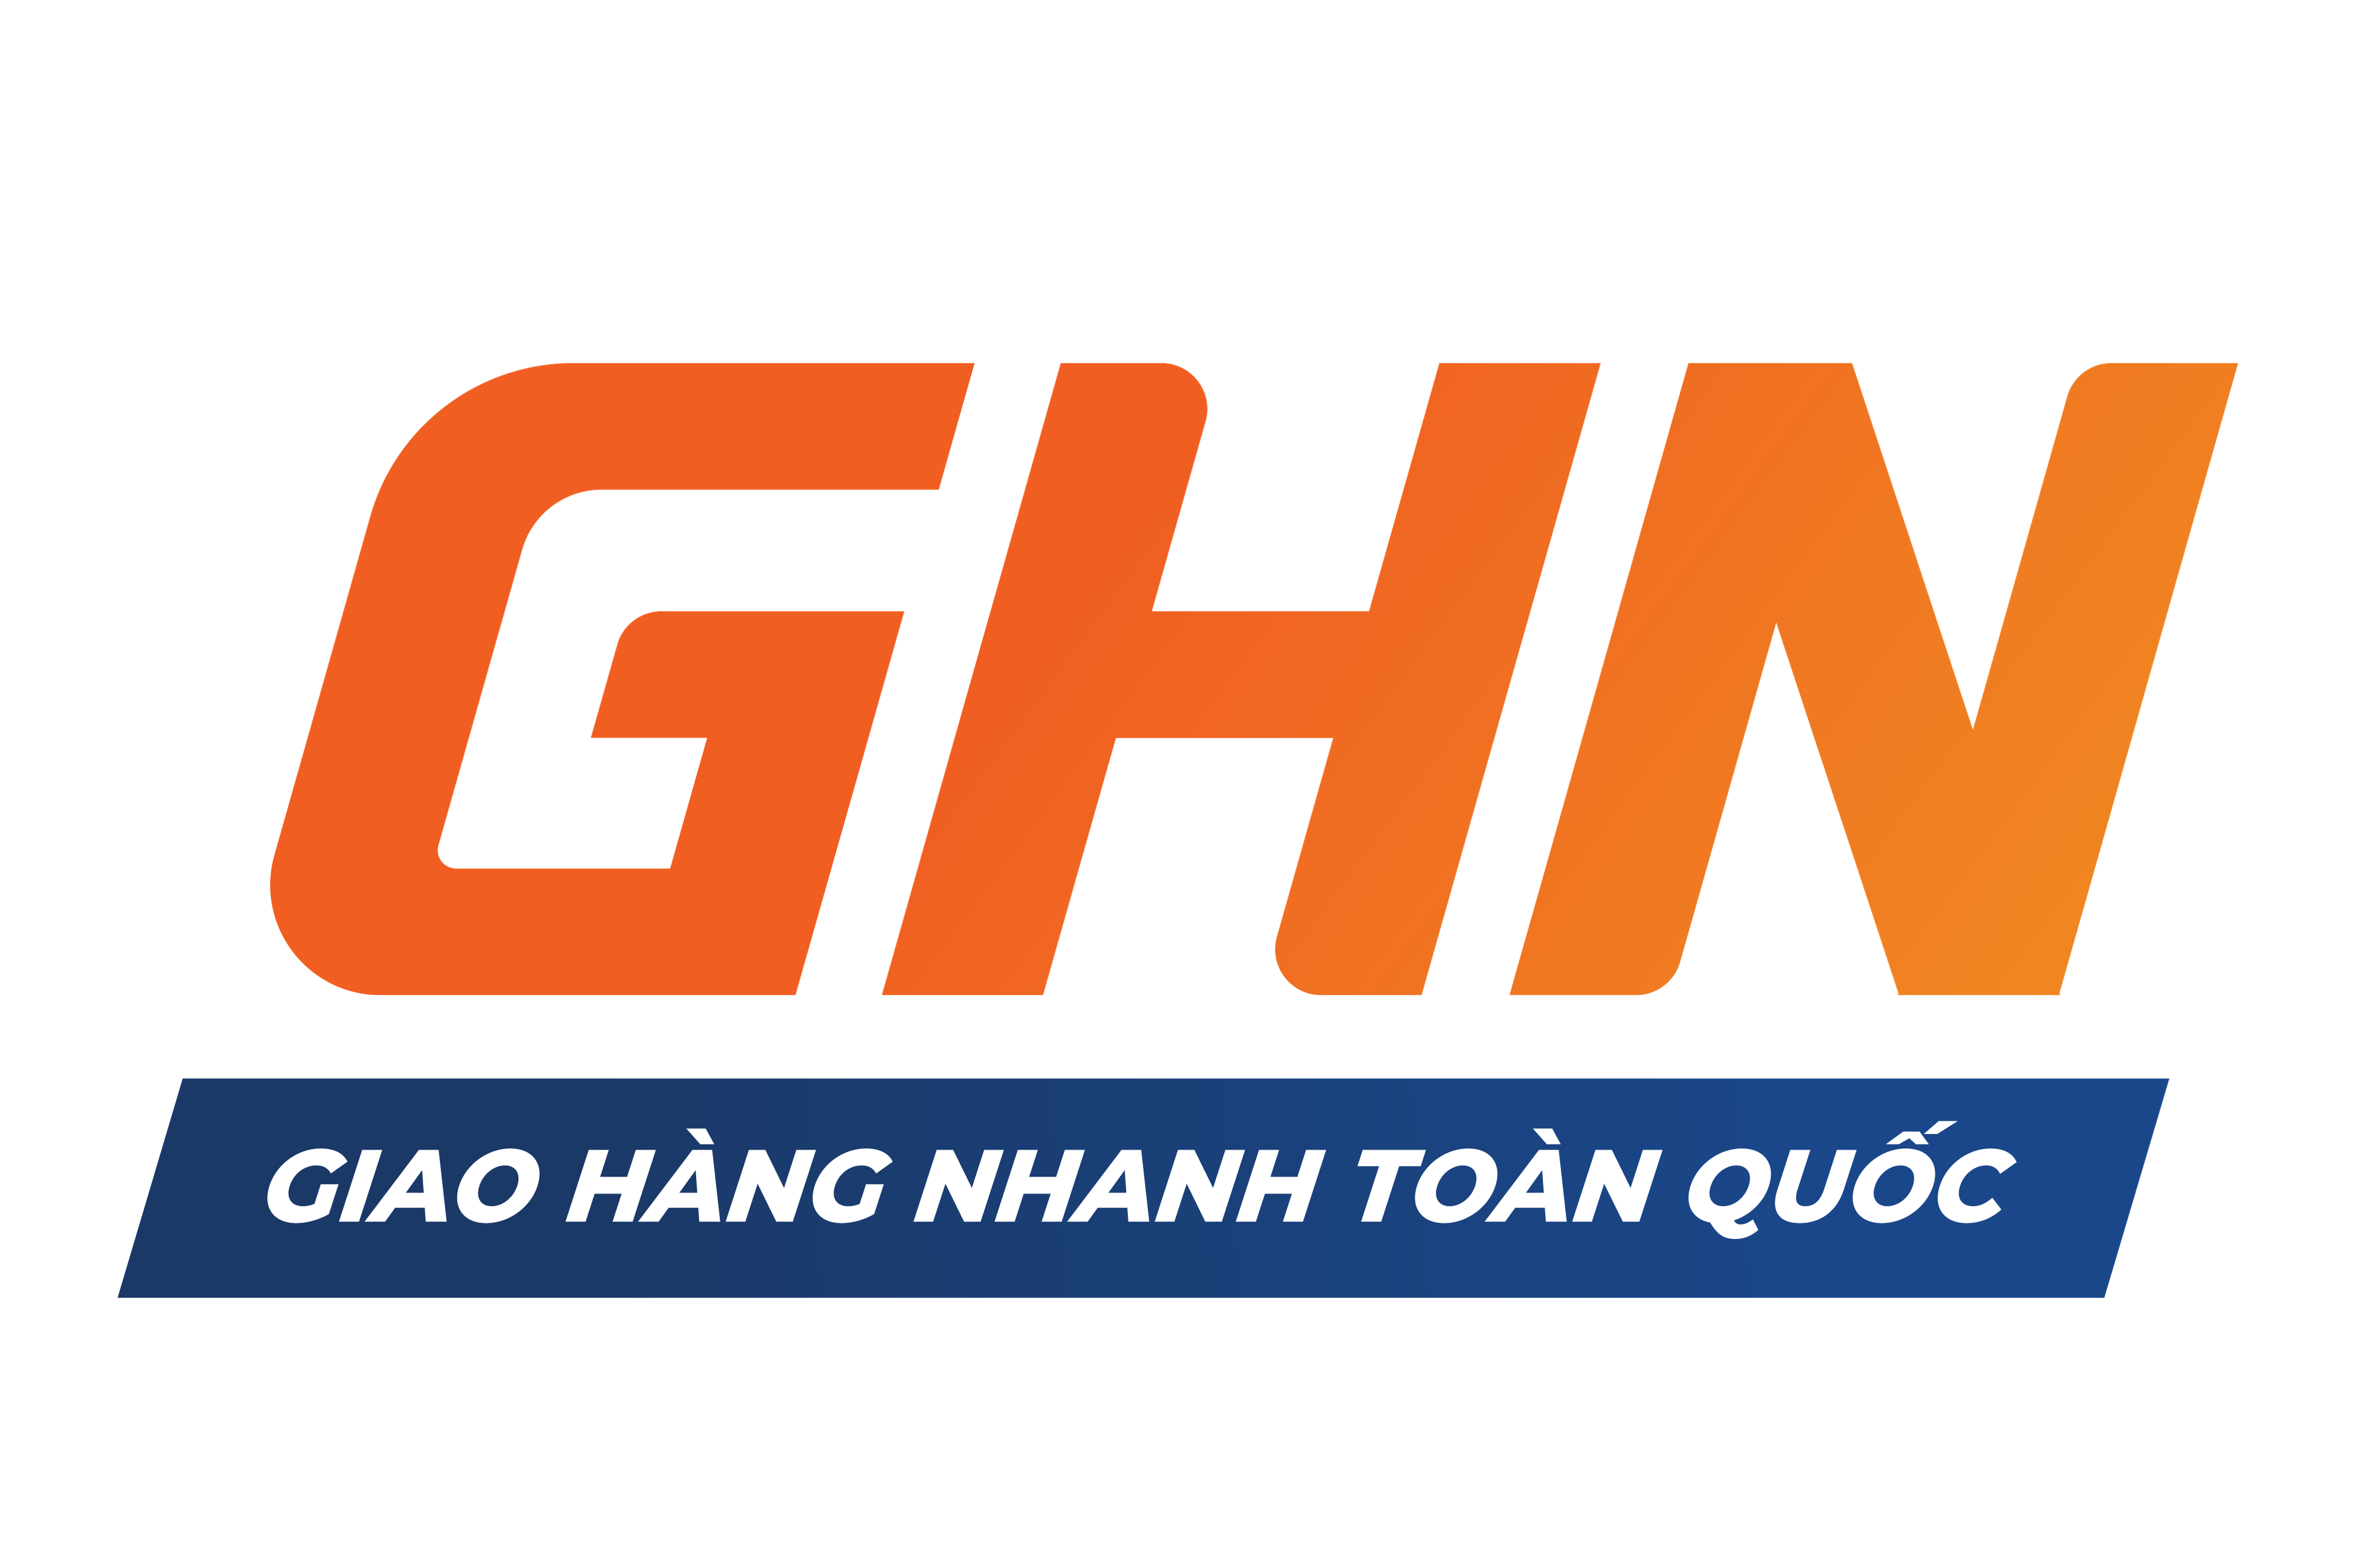 CÔNG TY CỔ PHẦN DỊCH VỤ GIAO HÀNG NHANH - CN MIỀN TRUNG